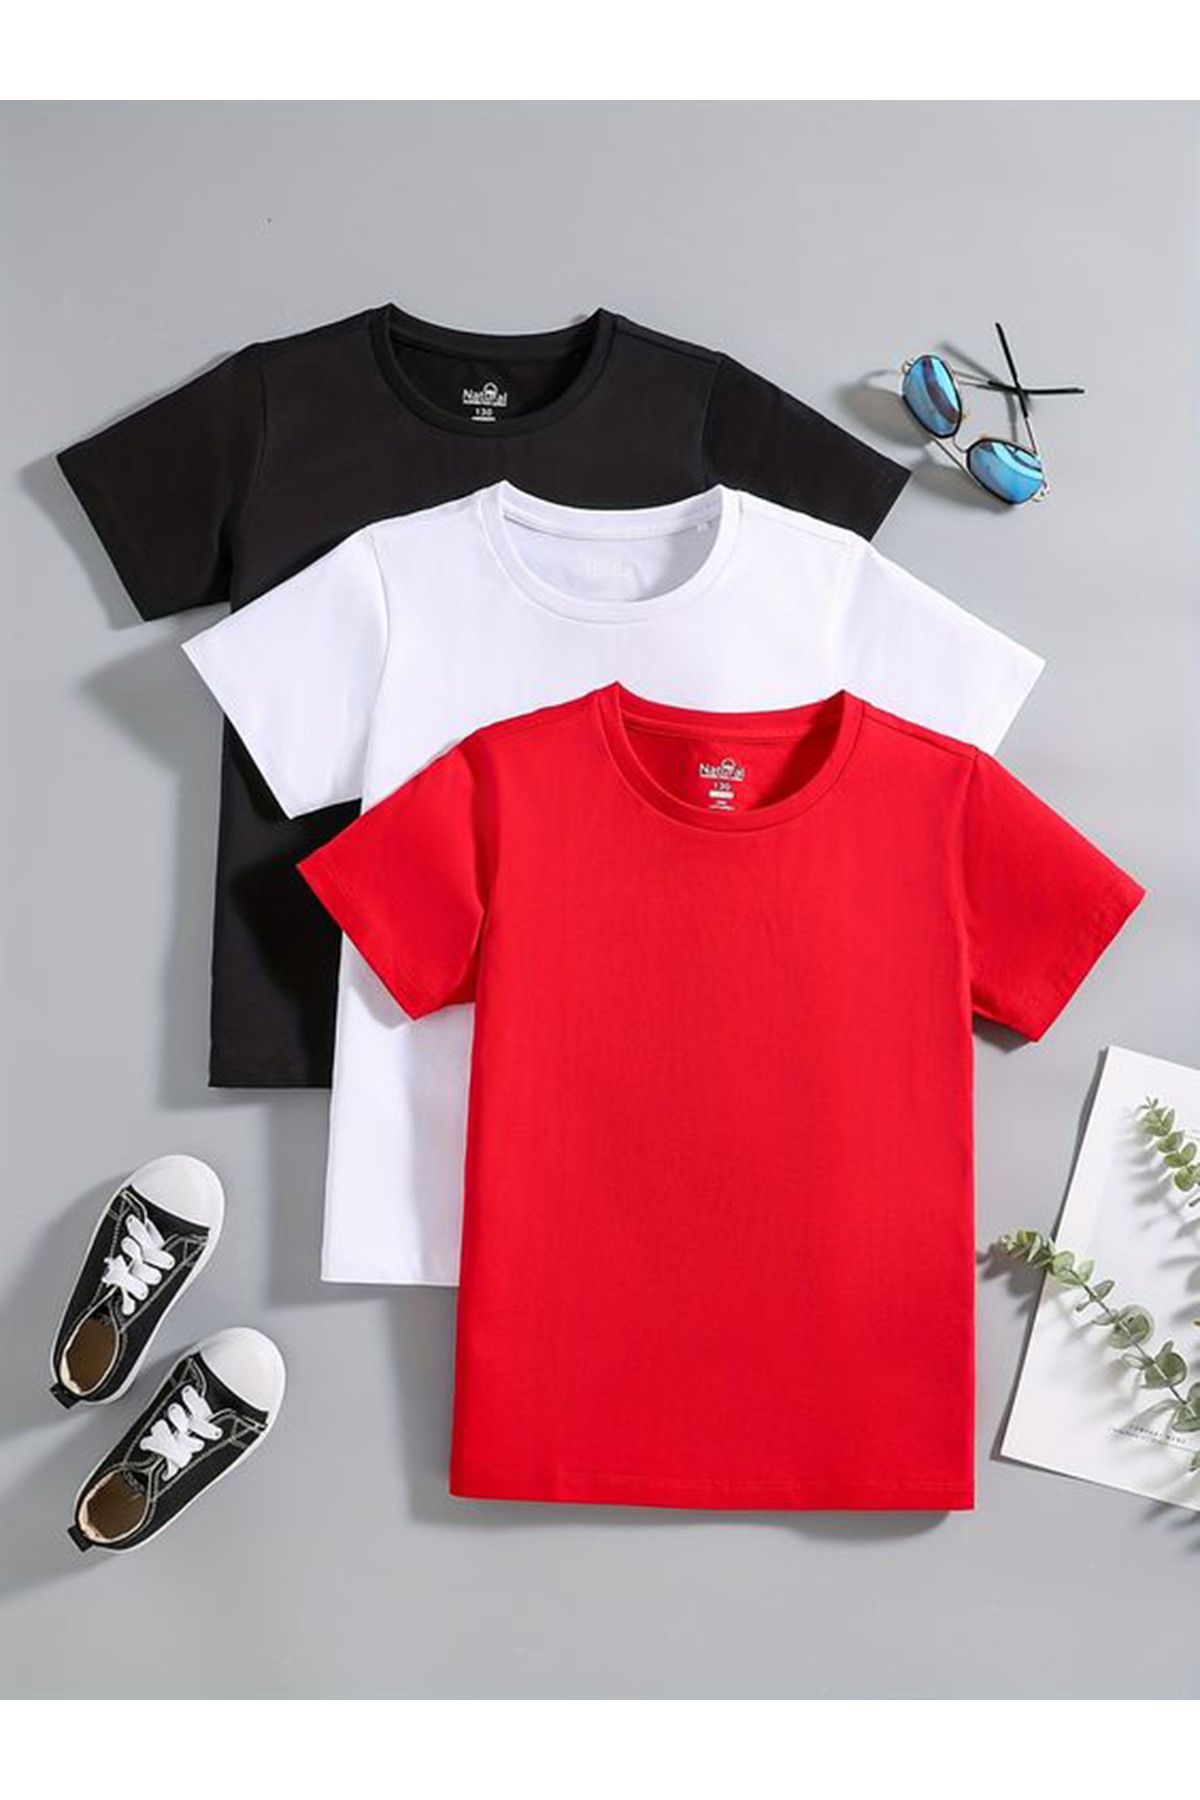 İnciTekstil 3'lü pamuklu ve likralı kız erkek çocuğu unisex t-shirt 5-15 yaş